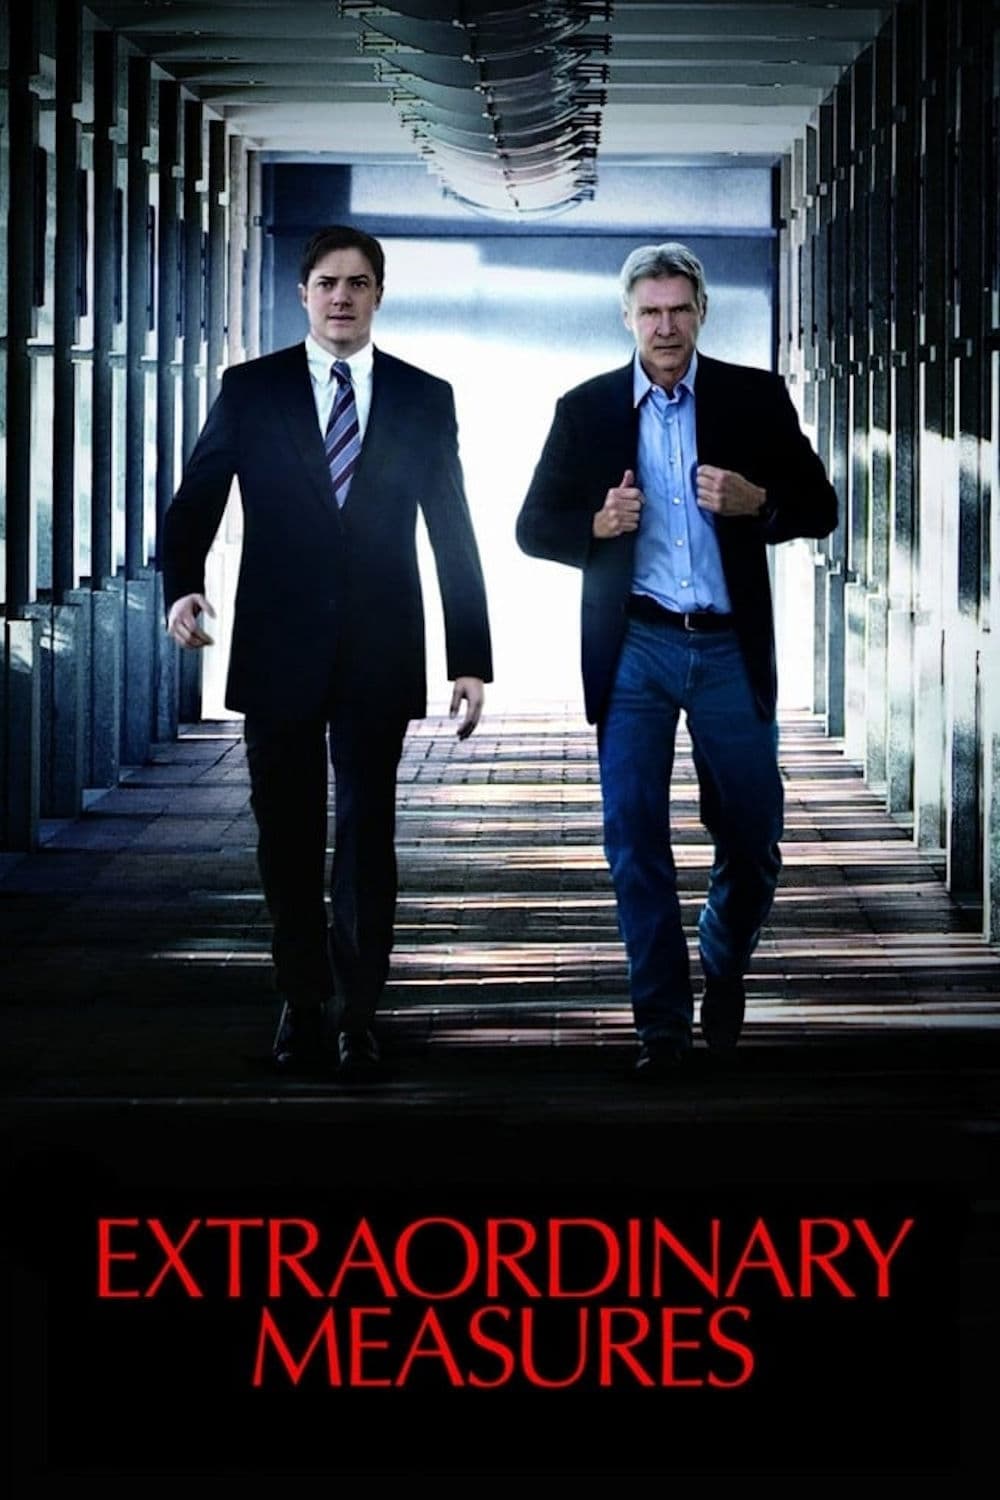 Medidas extraordinarias (2010)